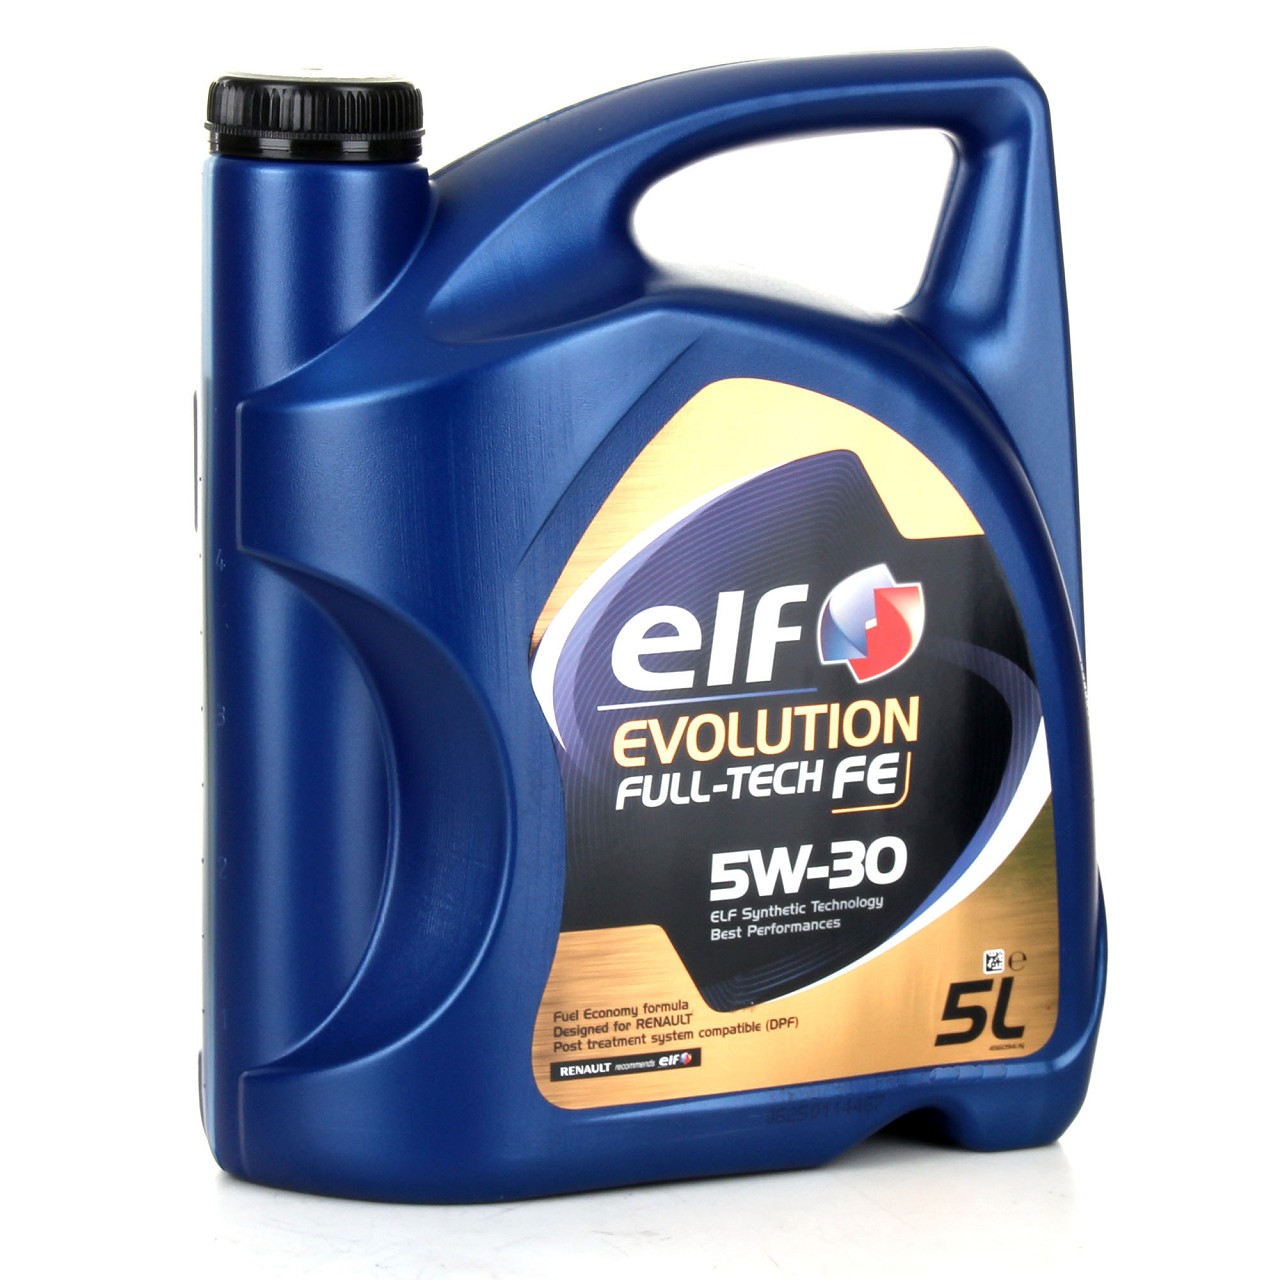 7L elf Evolution Full-Tech FE 5W-30 Motoröl ORIGINAL Renault Ölfilter 8201059775